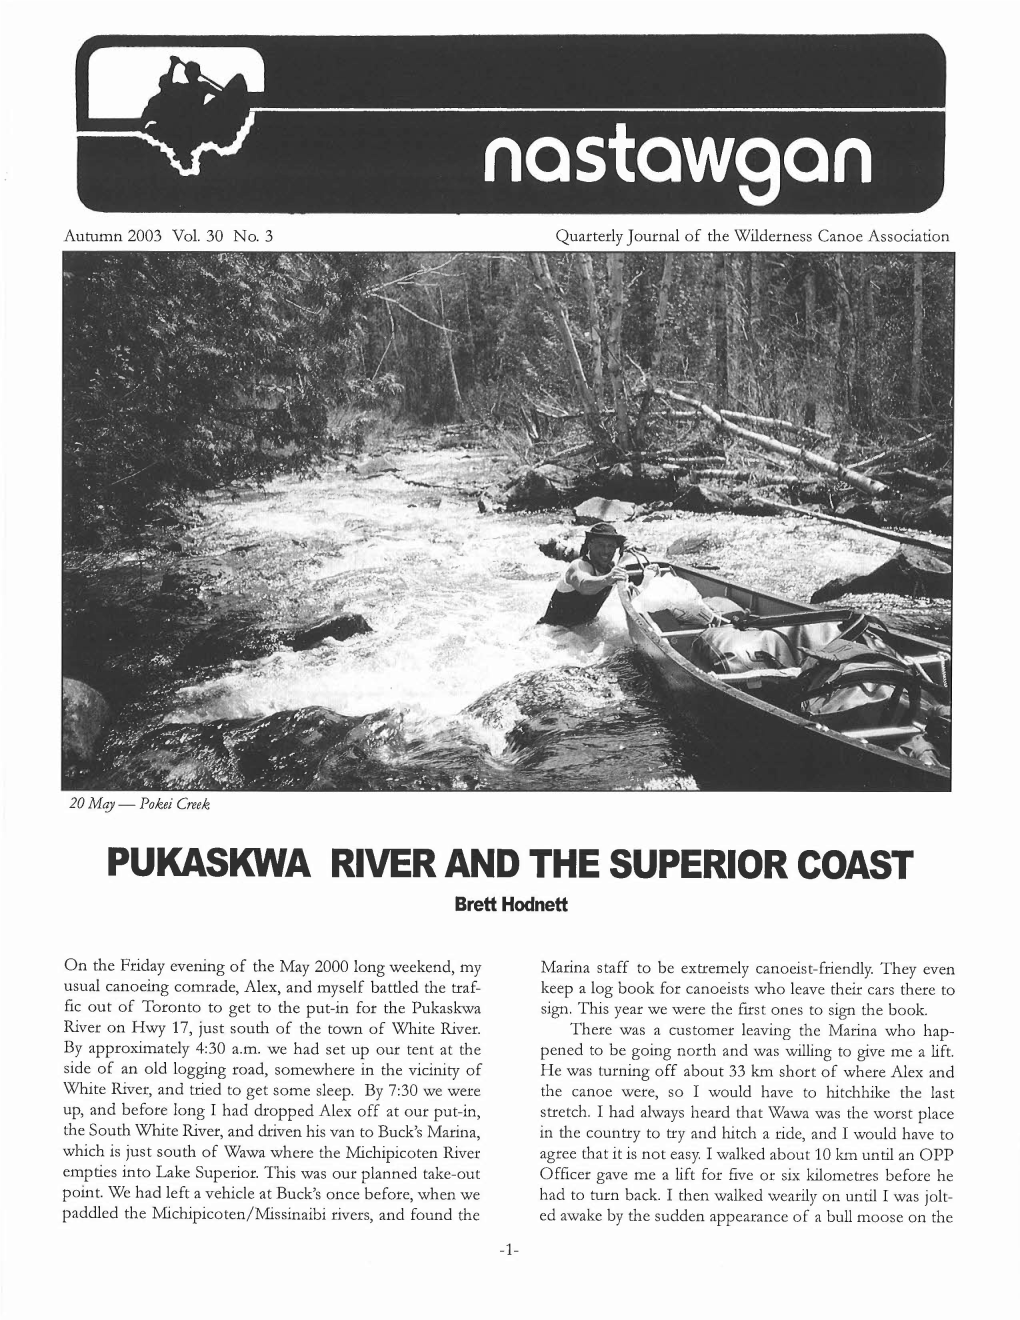 PUKASKWA RIVER and the SUPERIOR COAST Brett Hodnett